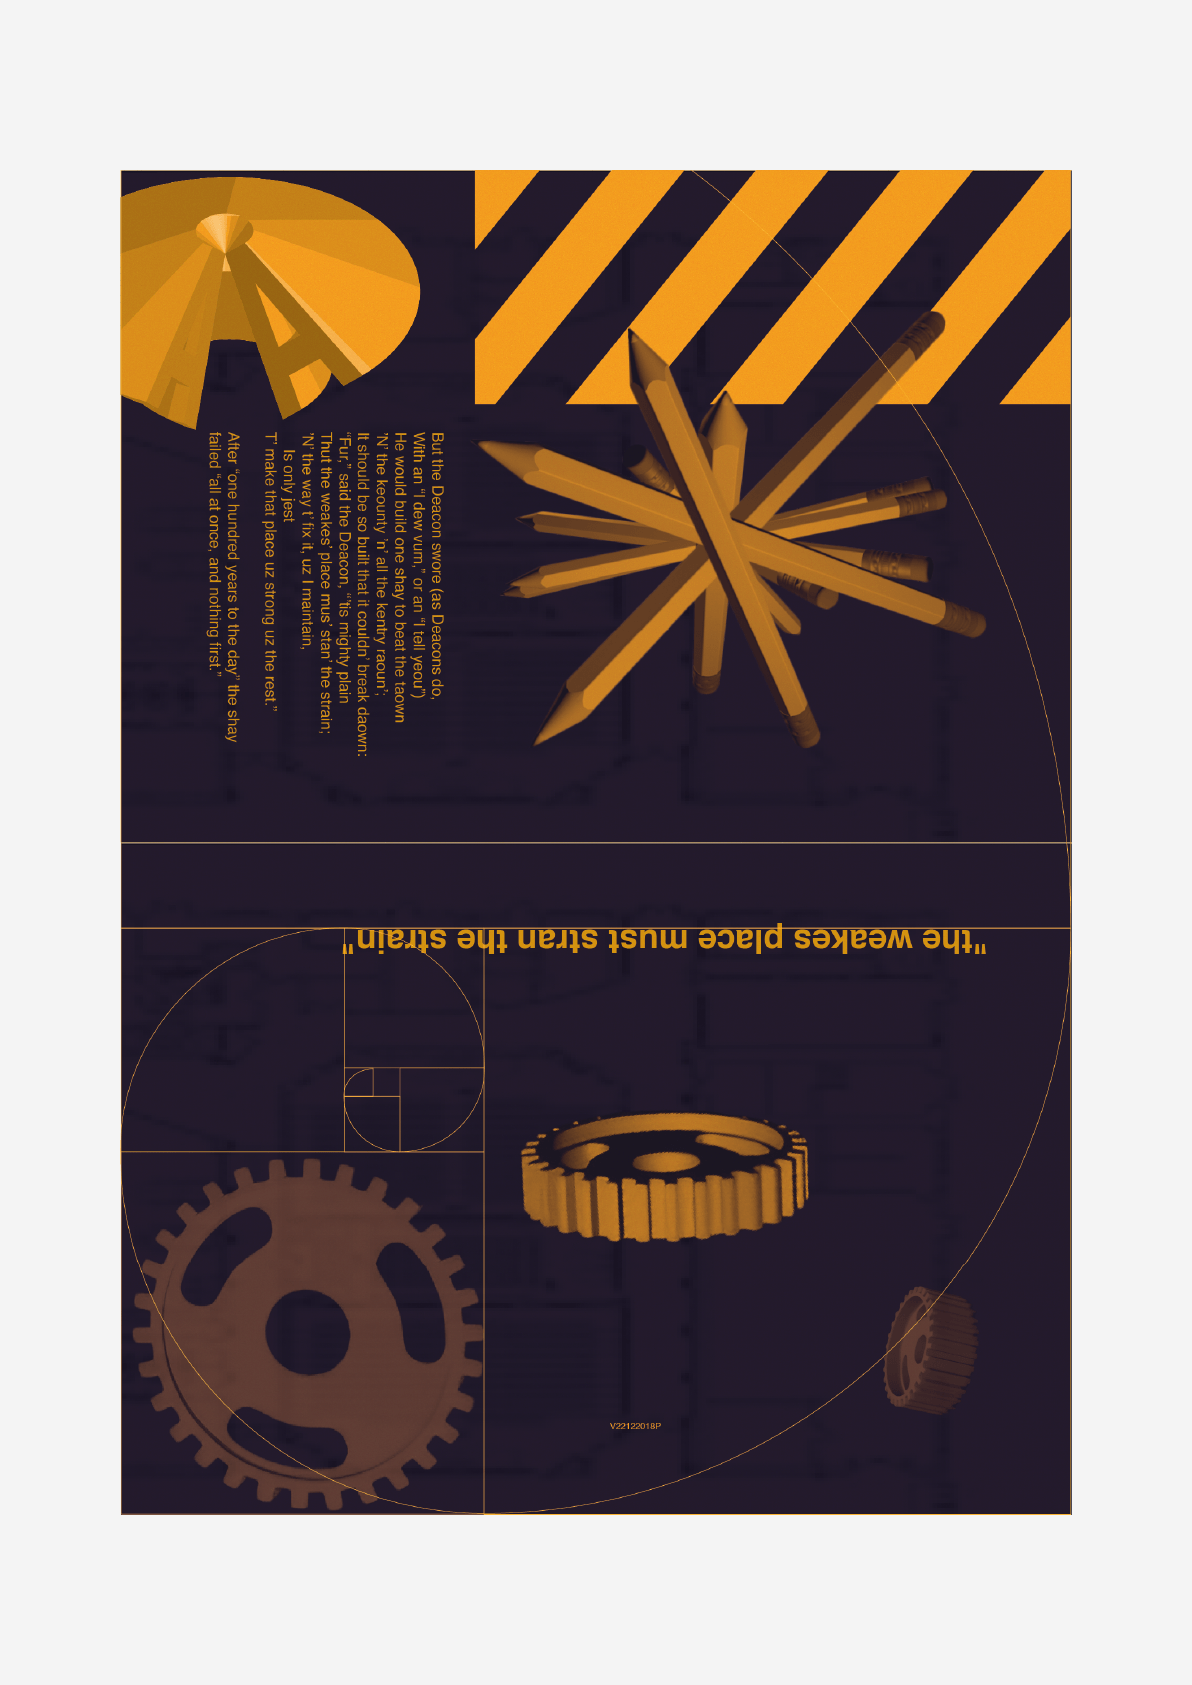 Collection Direzione artistica grafica graphic design  Layout poster progettazione series